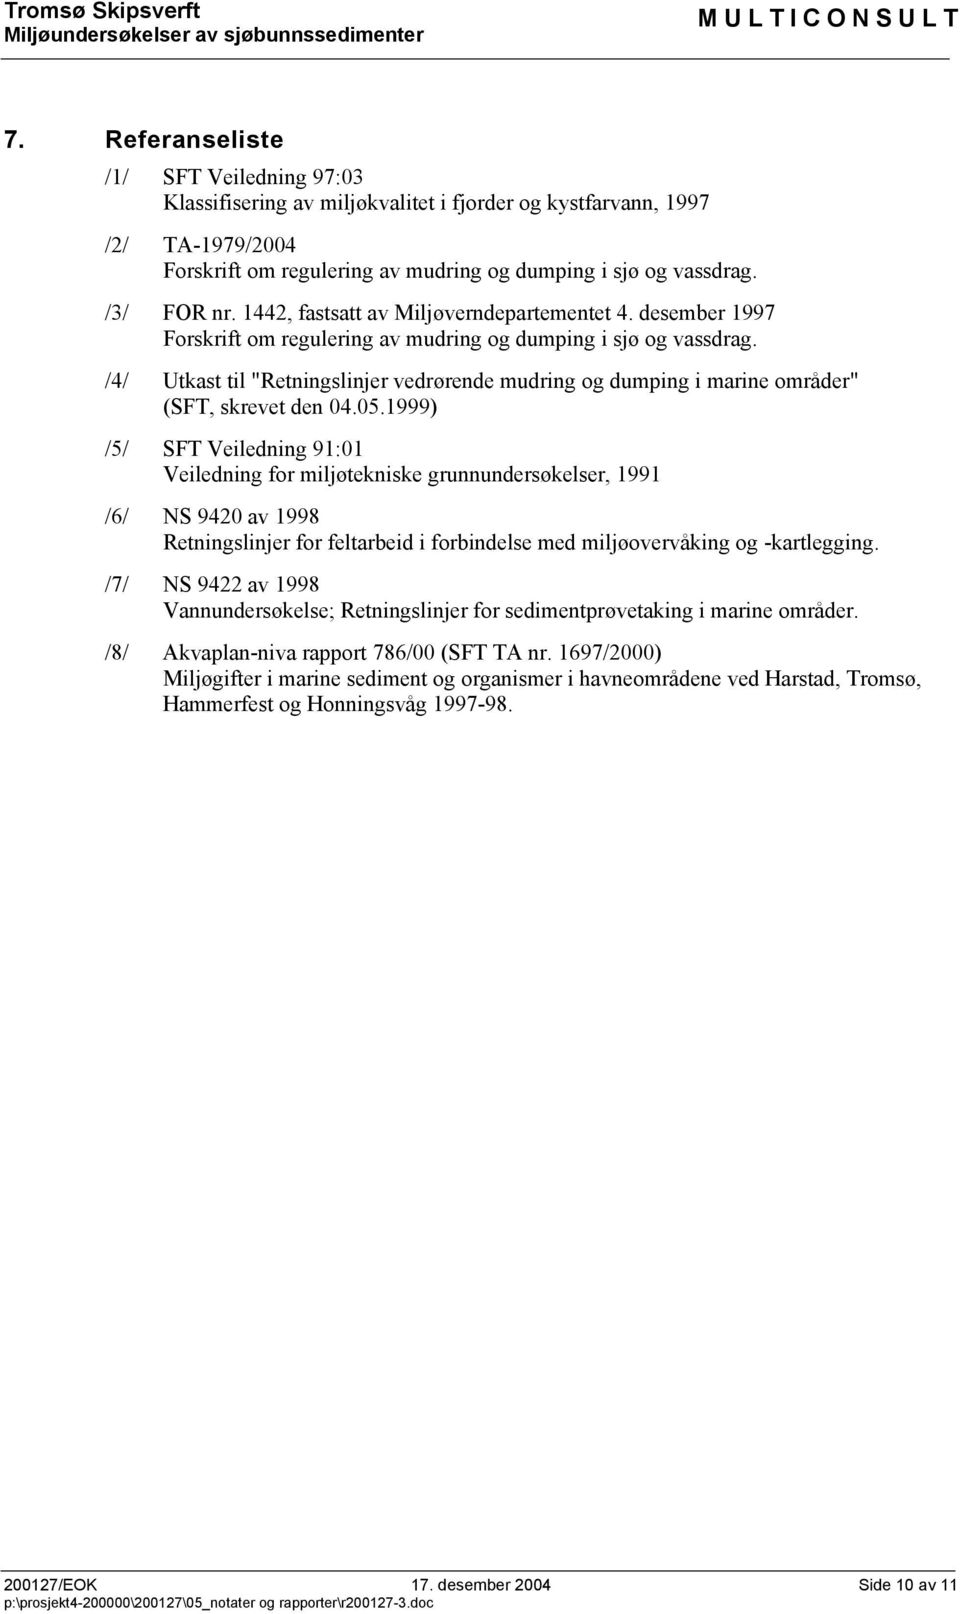 /4/ Utkast til "Retningslinjer vedrørende mudring og dumping i marine områder" (SFT, skrevet den 04.05.